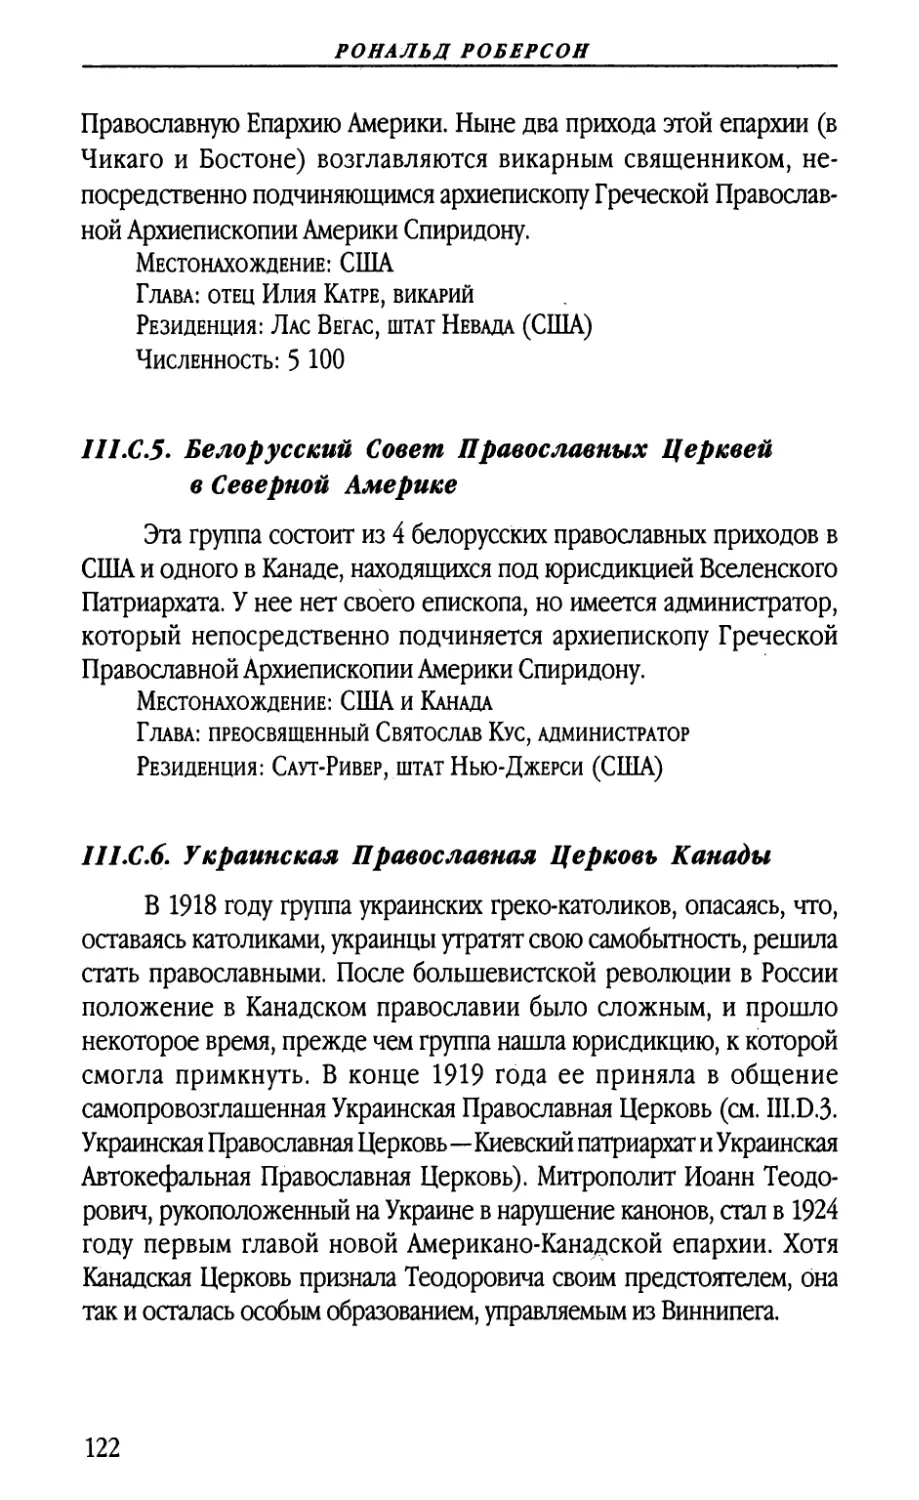 III.C.5. Белорусский Совет Православных Церквей в Северной Америке
III.C.6. Украинская Православная Церковь Канады